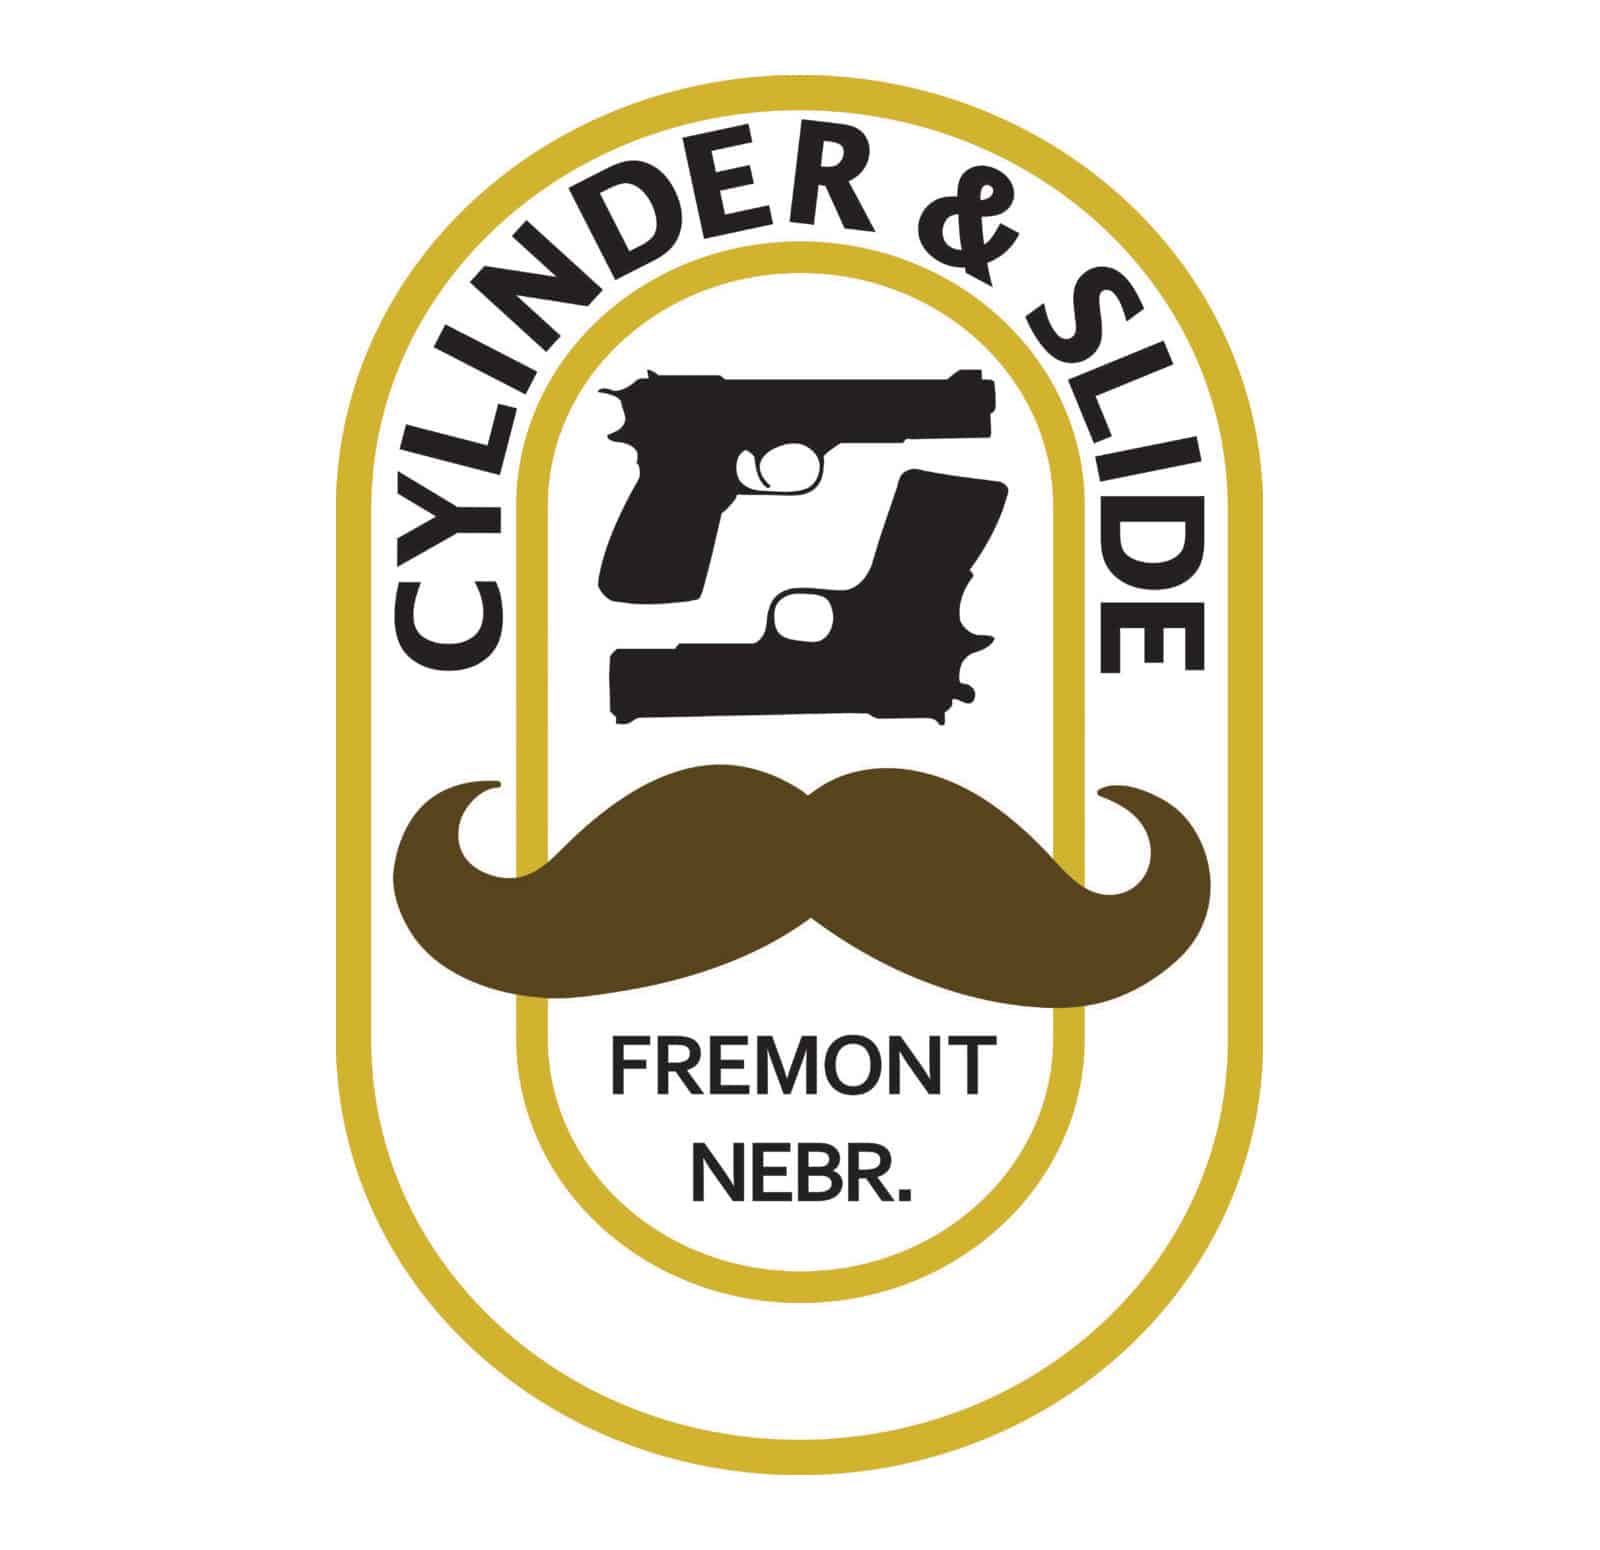 Cylinder and Slide Logo